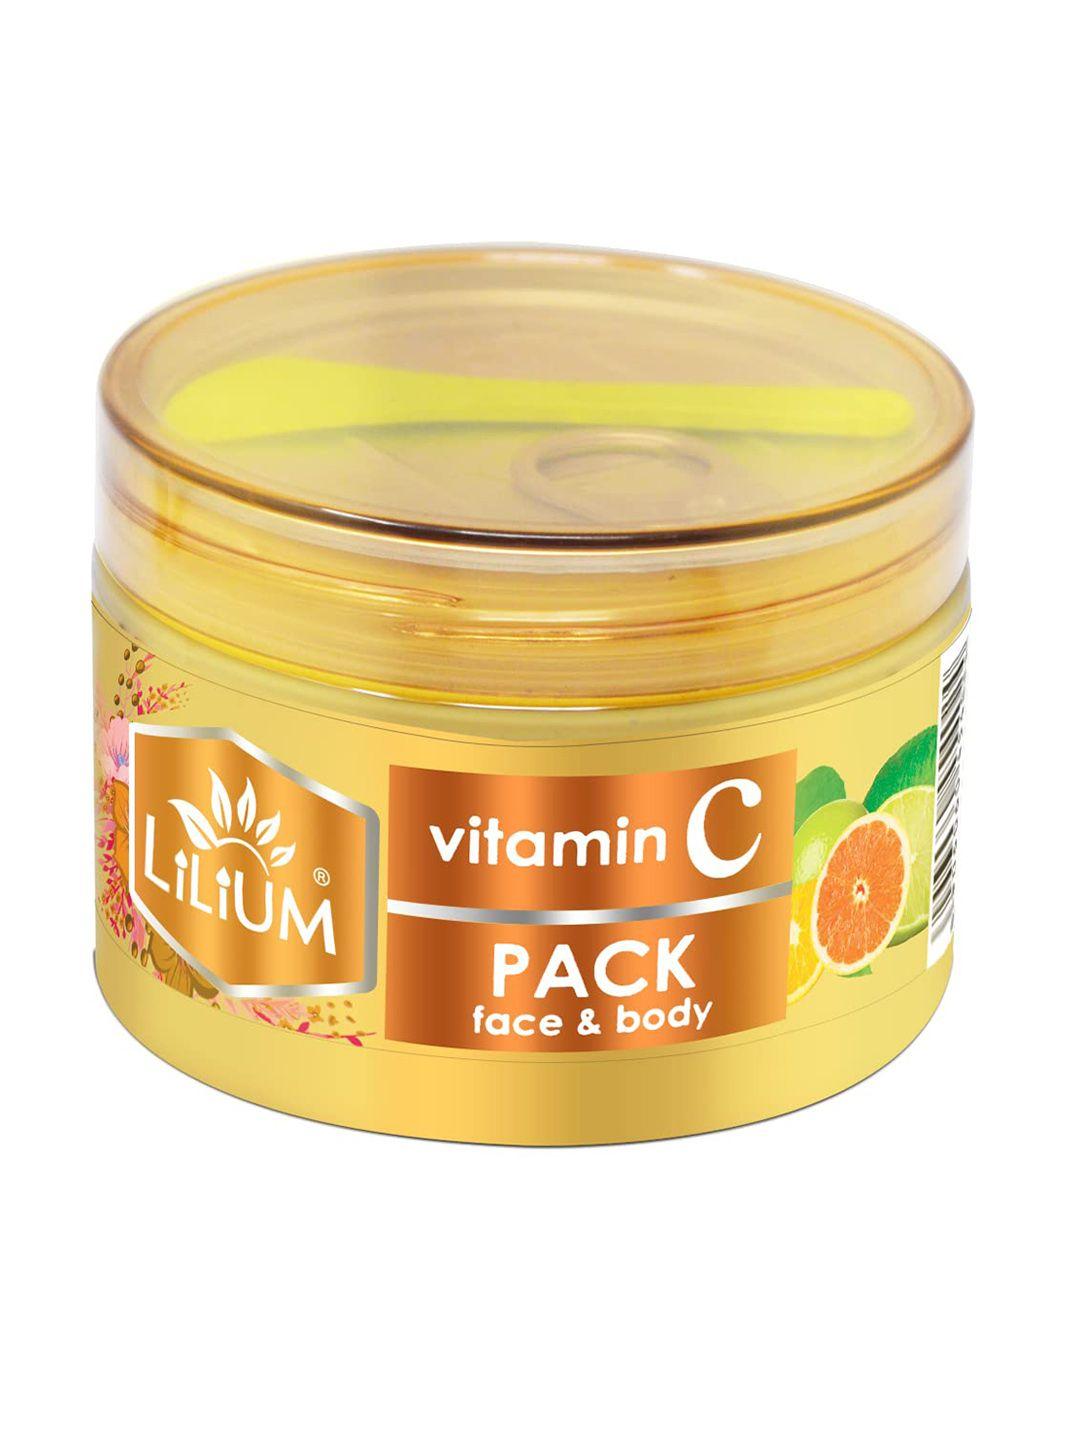 lilium vitamin c face & body pack 250g